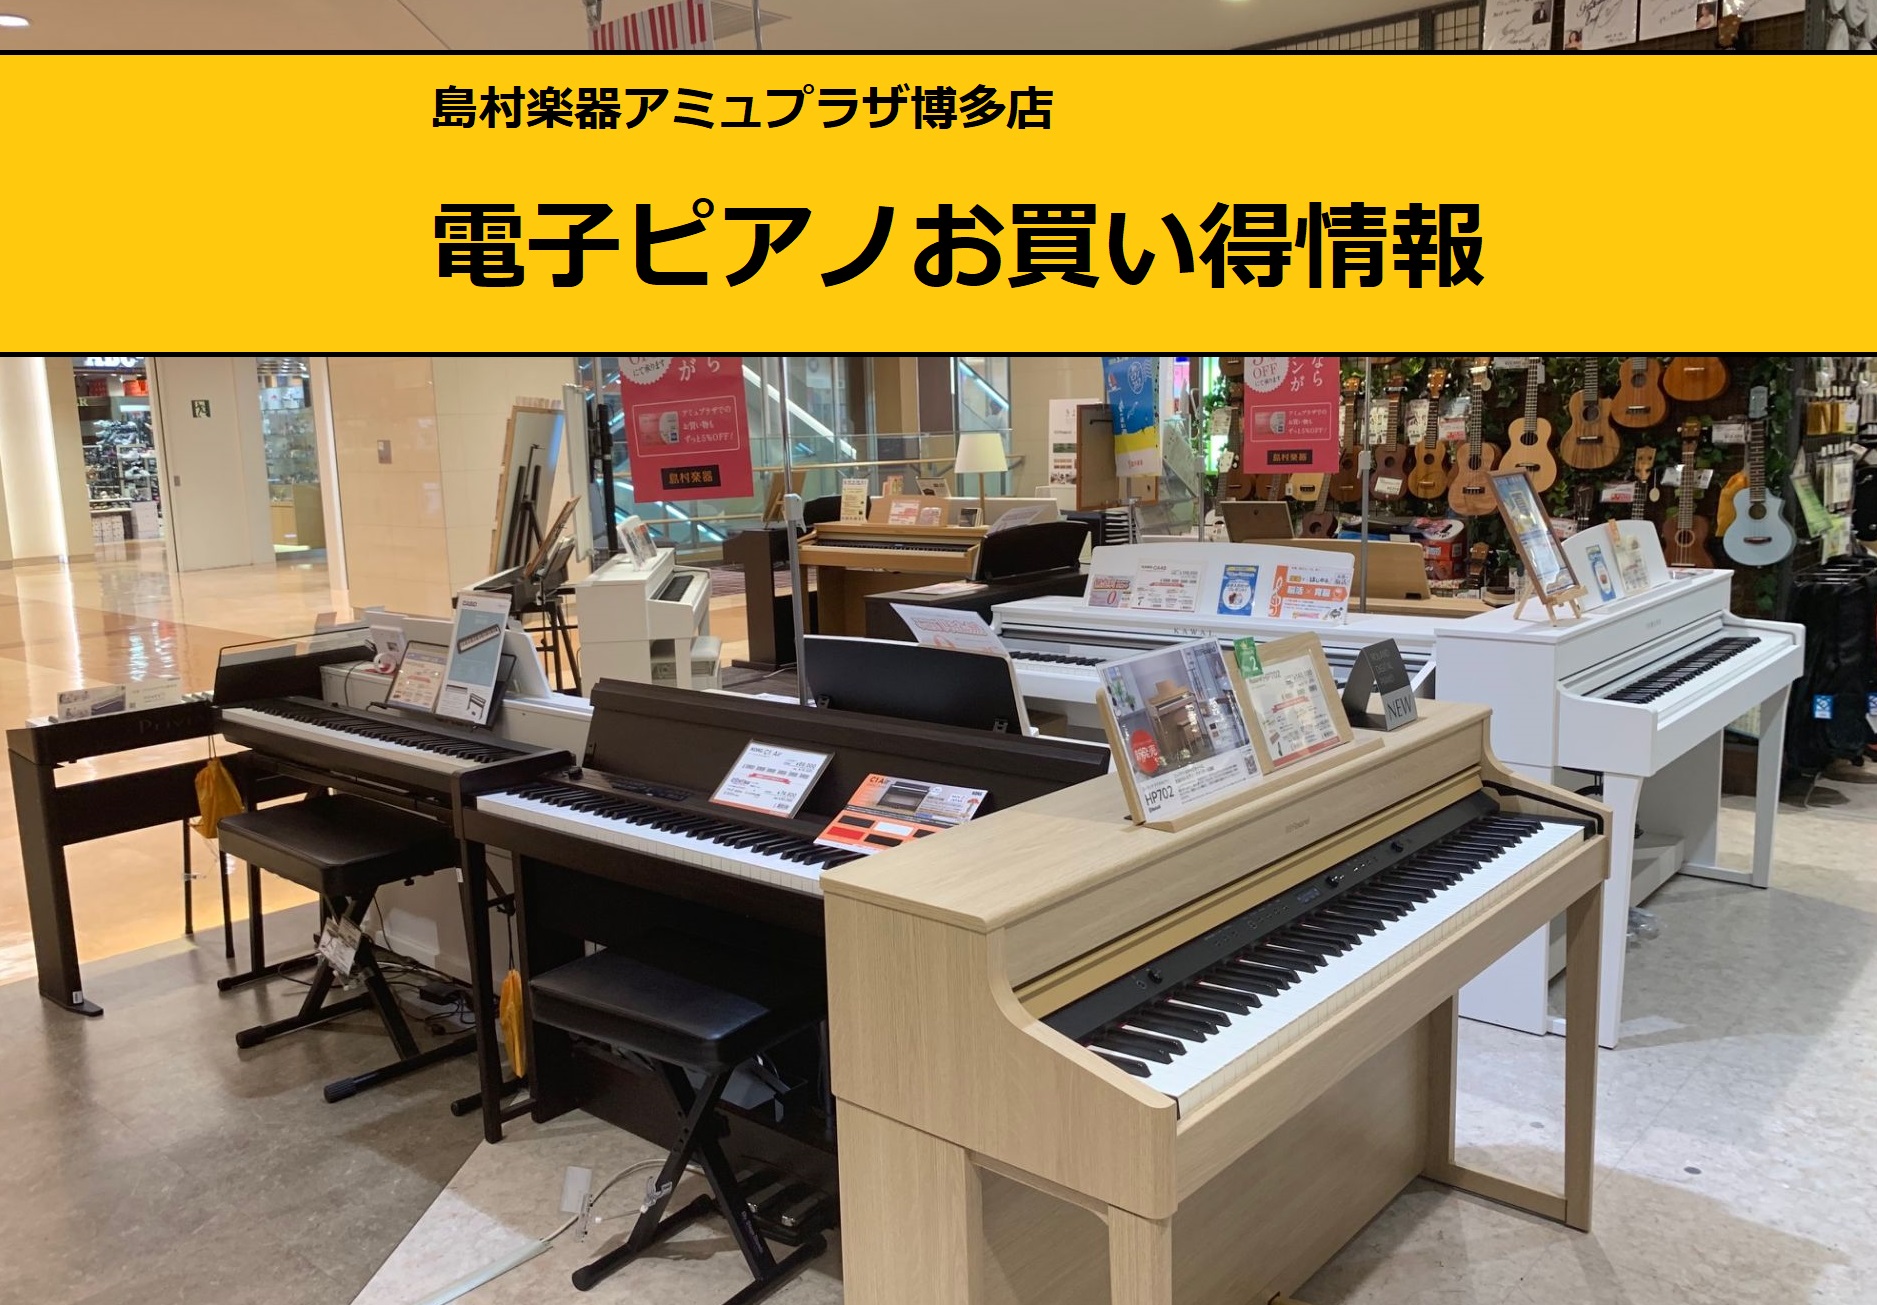 *展示品1台限りの特価電子ピアノ **KAWAI　CN27LO タッチ、音、ペダル。ピアノの基本にこだわり、エントリーモデルながらワンランク上を目指しました。レッスン教則本も内蔵し、ご家庭でのレッスンをサポートします。コンパクトながらピアノらしいデザイン。これからピアノを始める方にオススメのデジタル […]